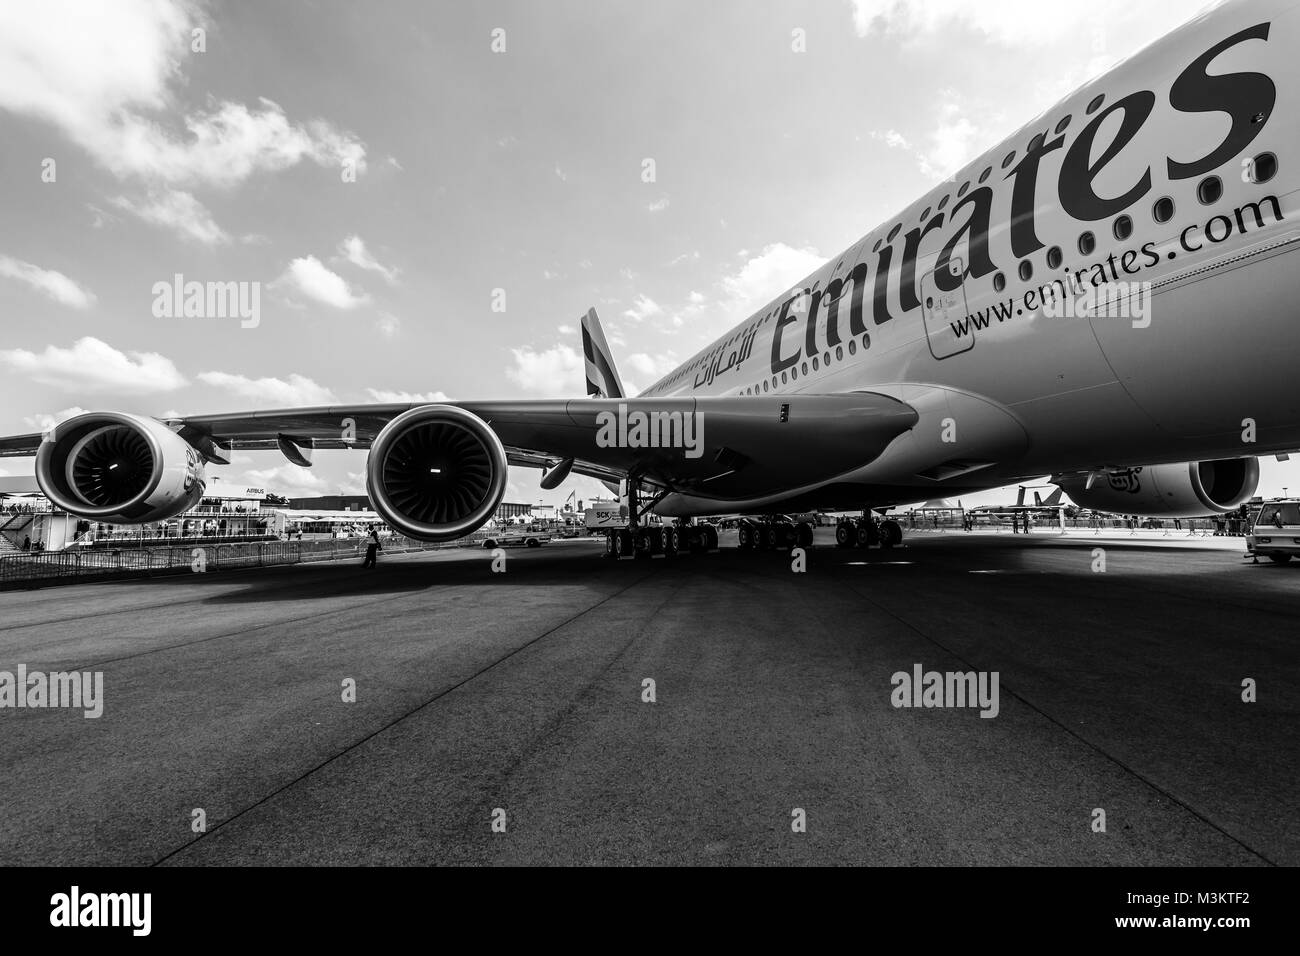 BERLIN, DEUTSCHLAND - Juni 02, 2016: Detail der Flügel und einem turbofan "Engine Alliance GP7000" der Airliner Airbus A380. Emirates Airline. Schwarz und Weiß. Ausstellung die ILA Berlin Air Show 2016 Stockfoto